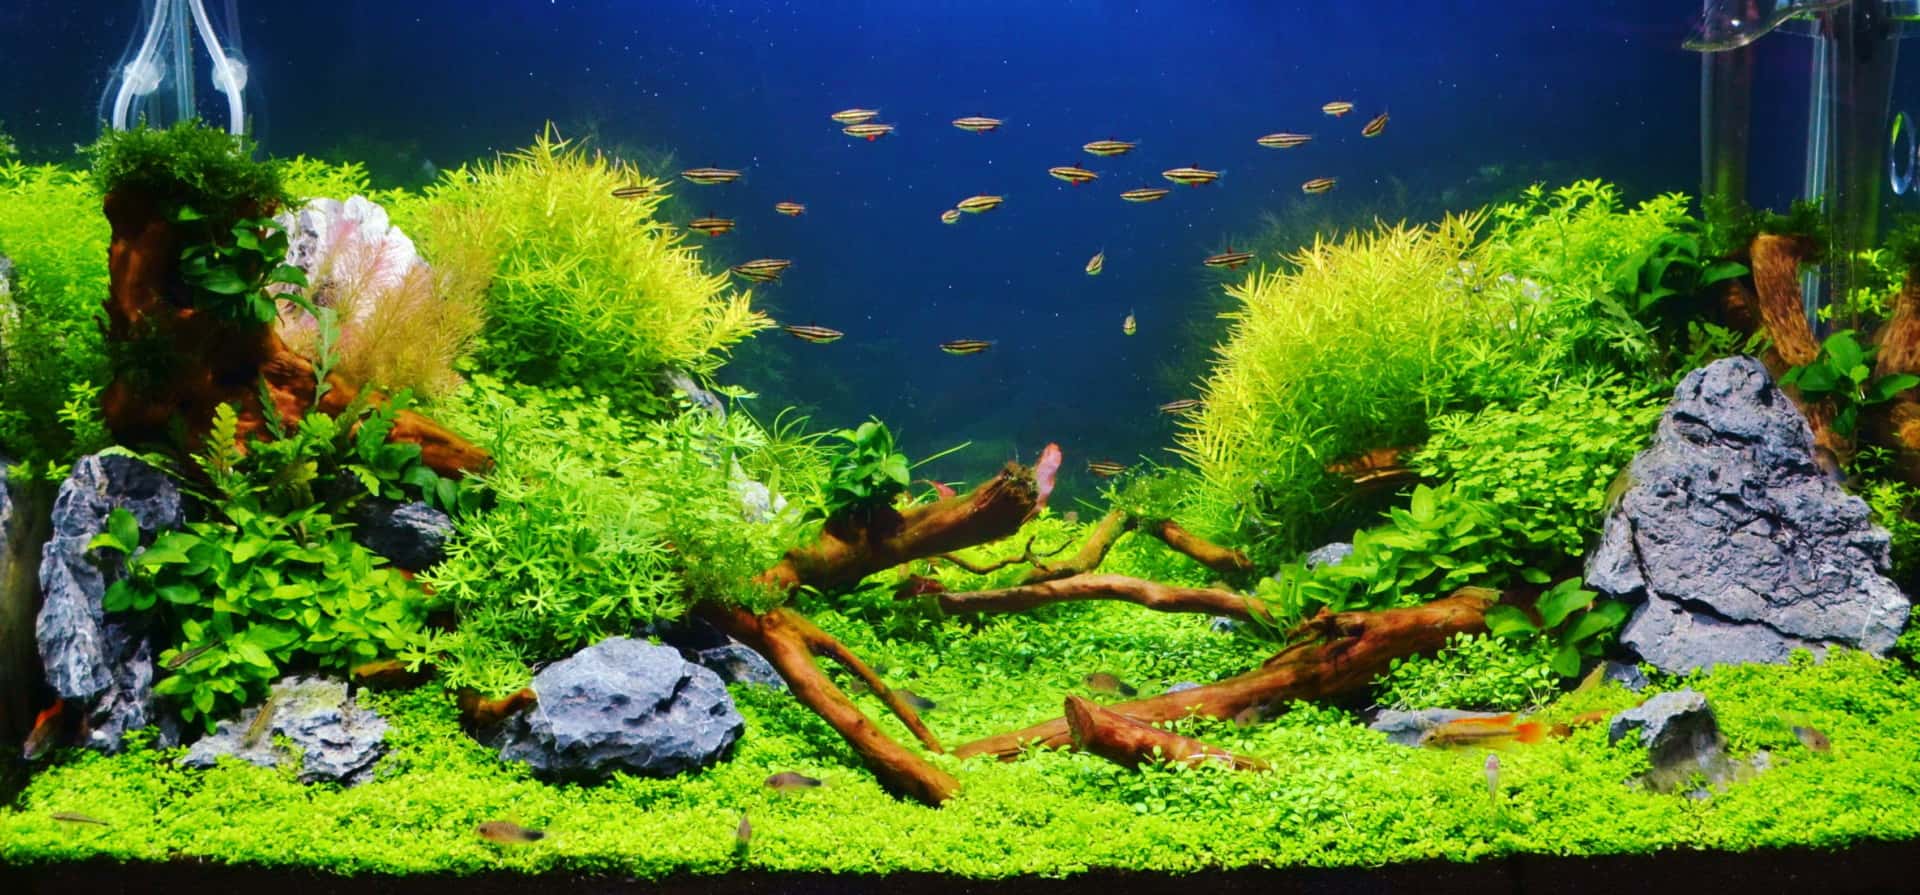 Pflanzenvielfalt im Unterwassergarten - Aquarien interessant gestalten 1